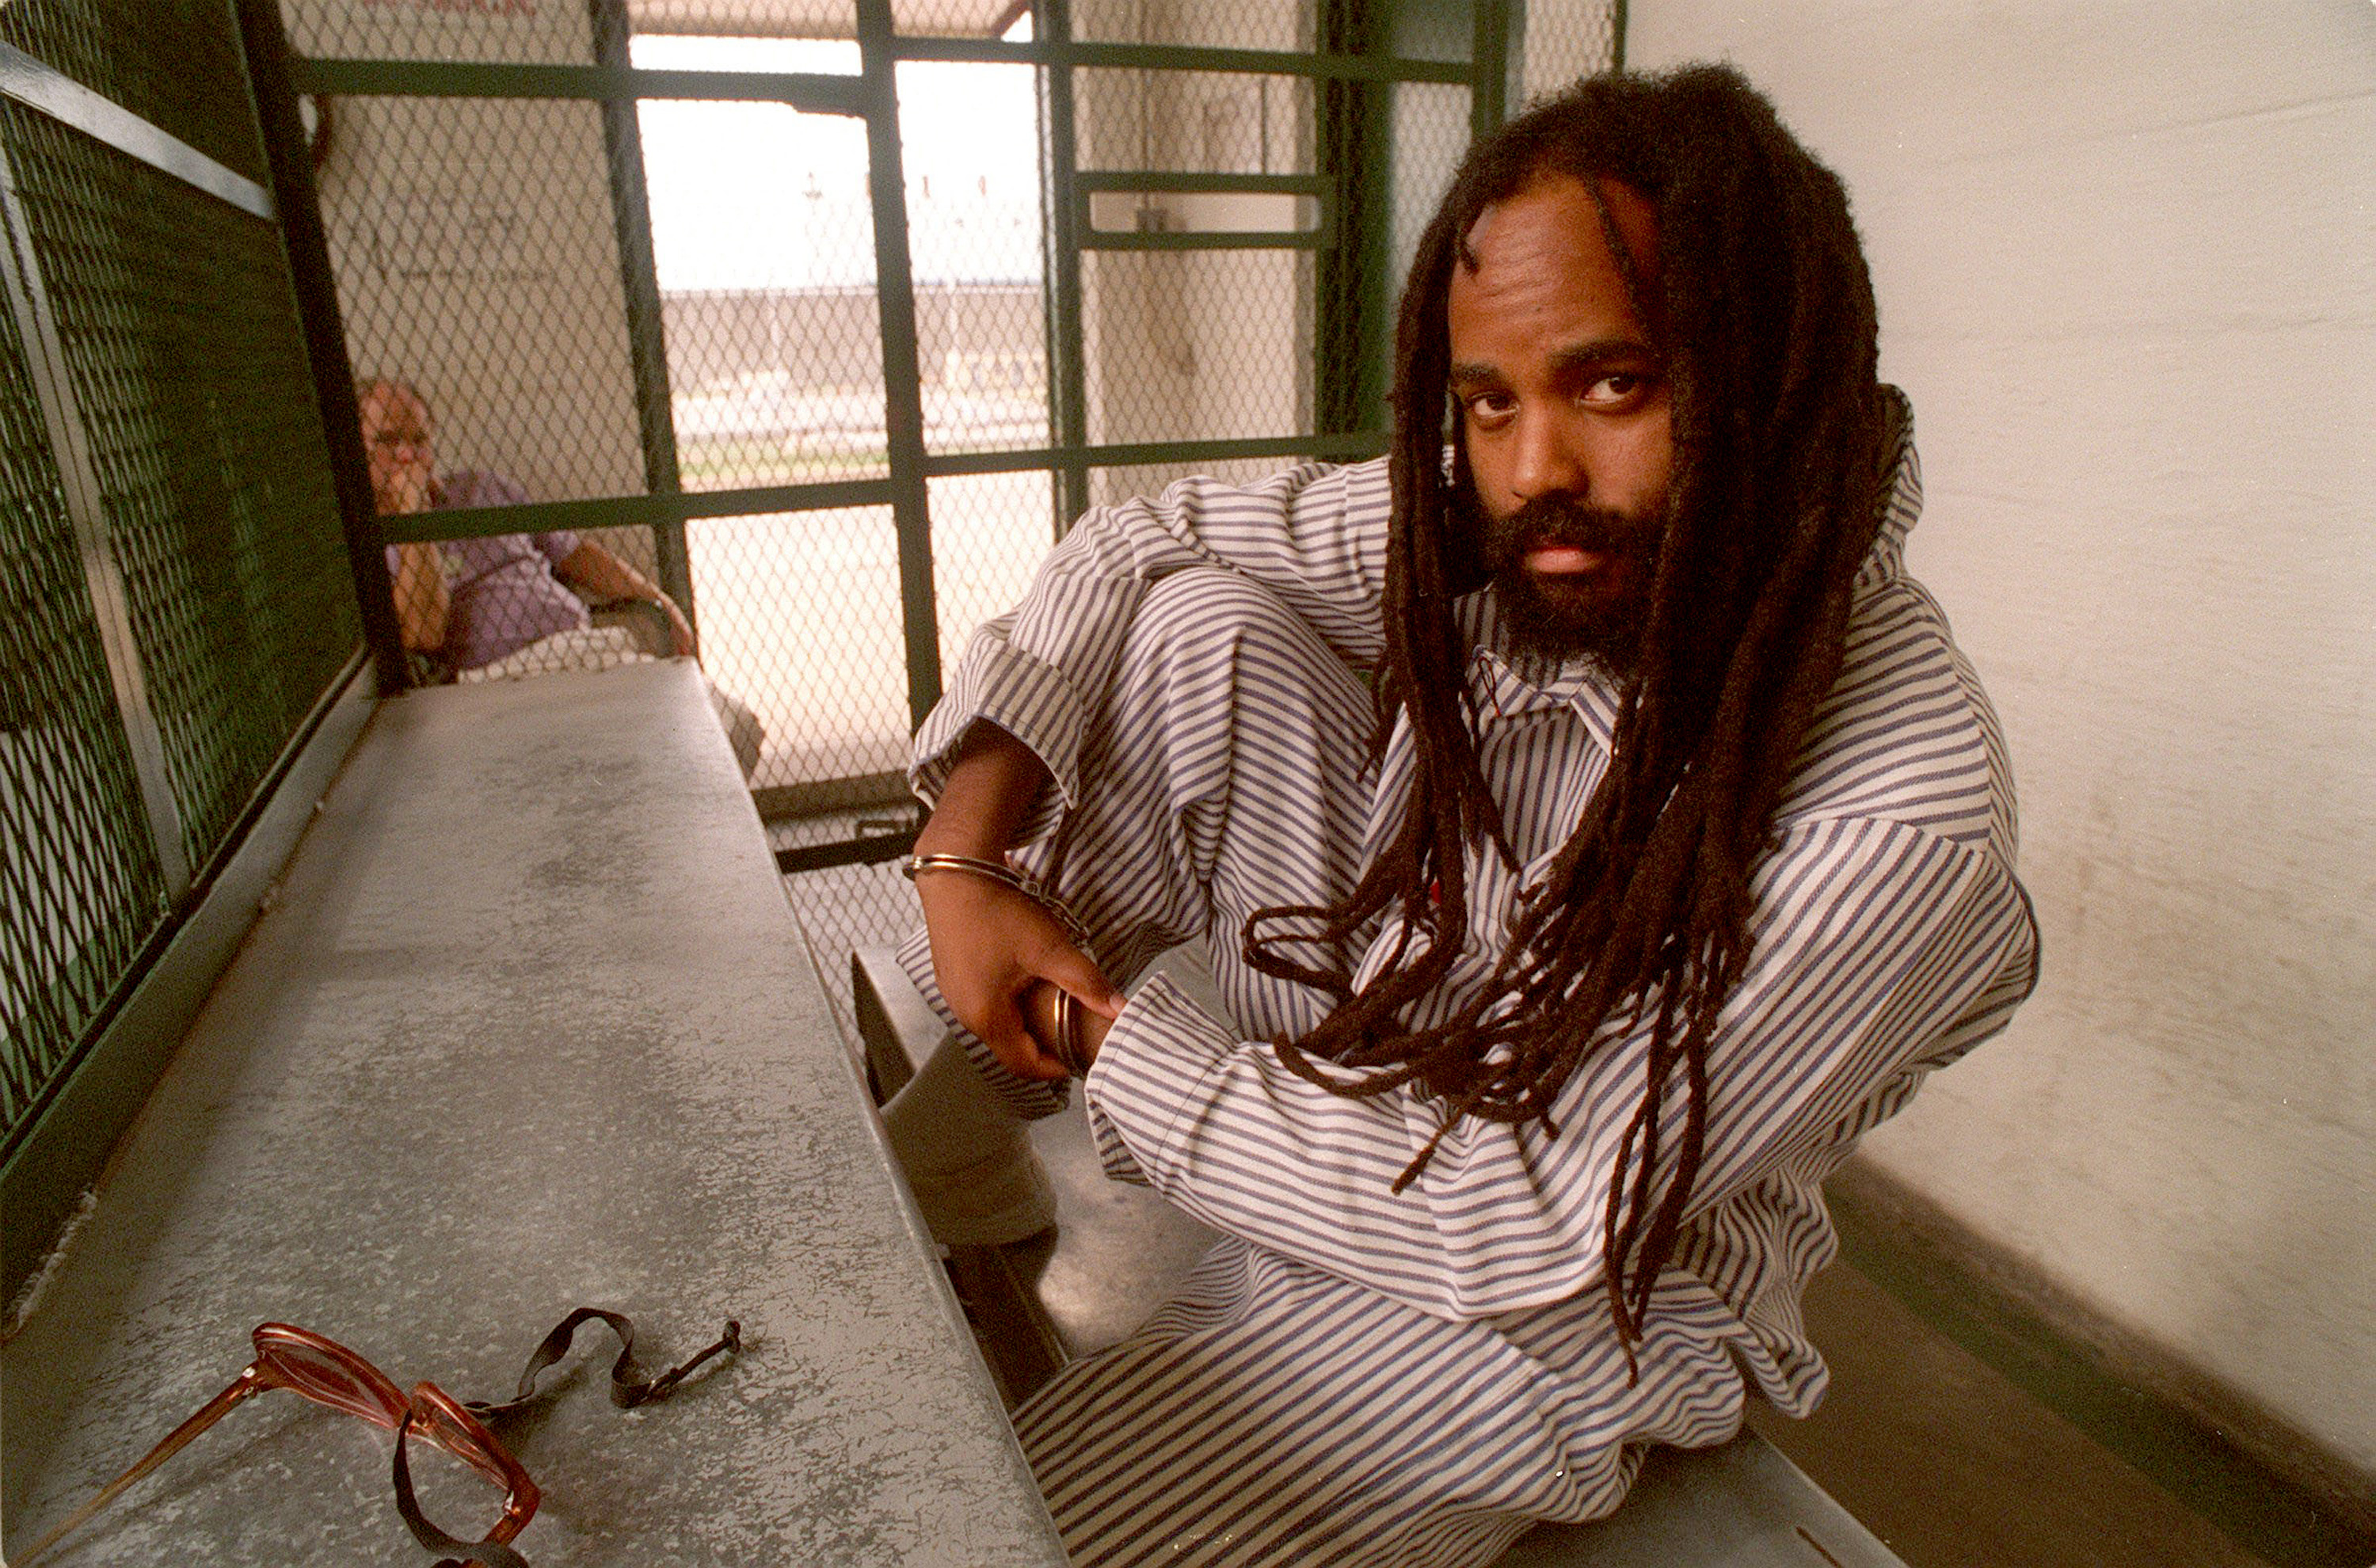 Abu-Jamal ha pasado más de 33 años en prisión